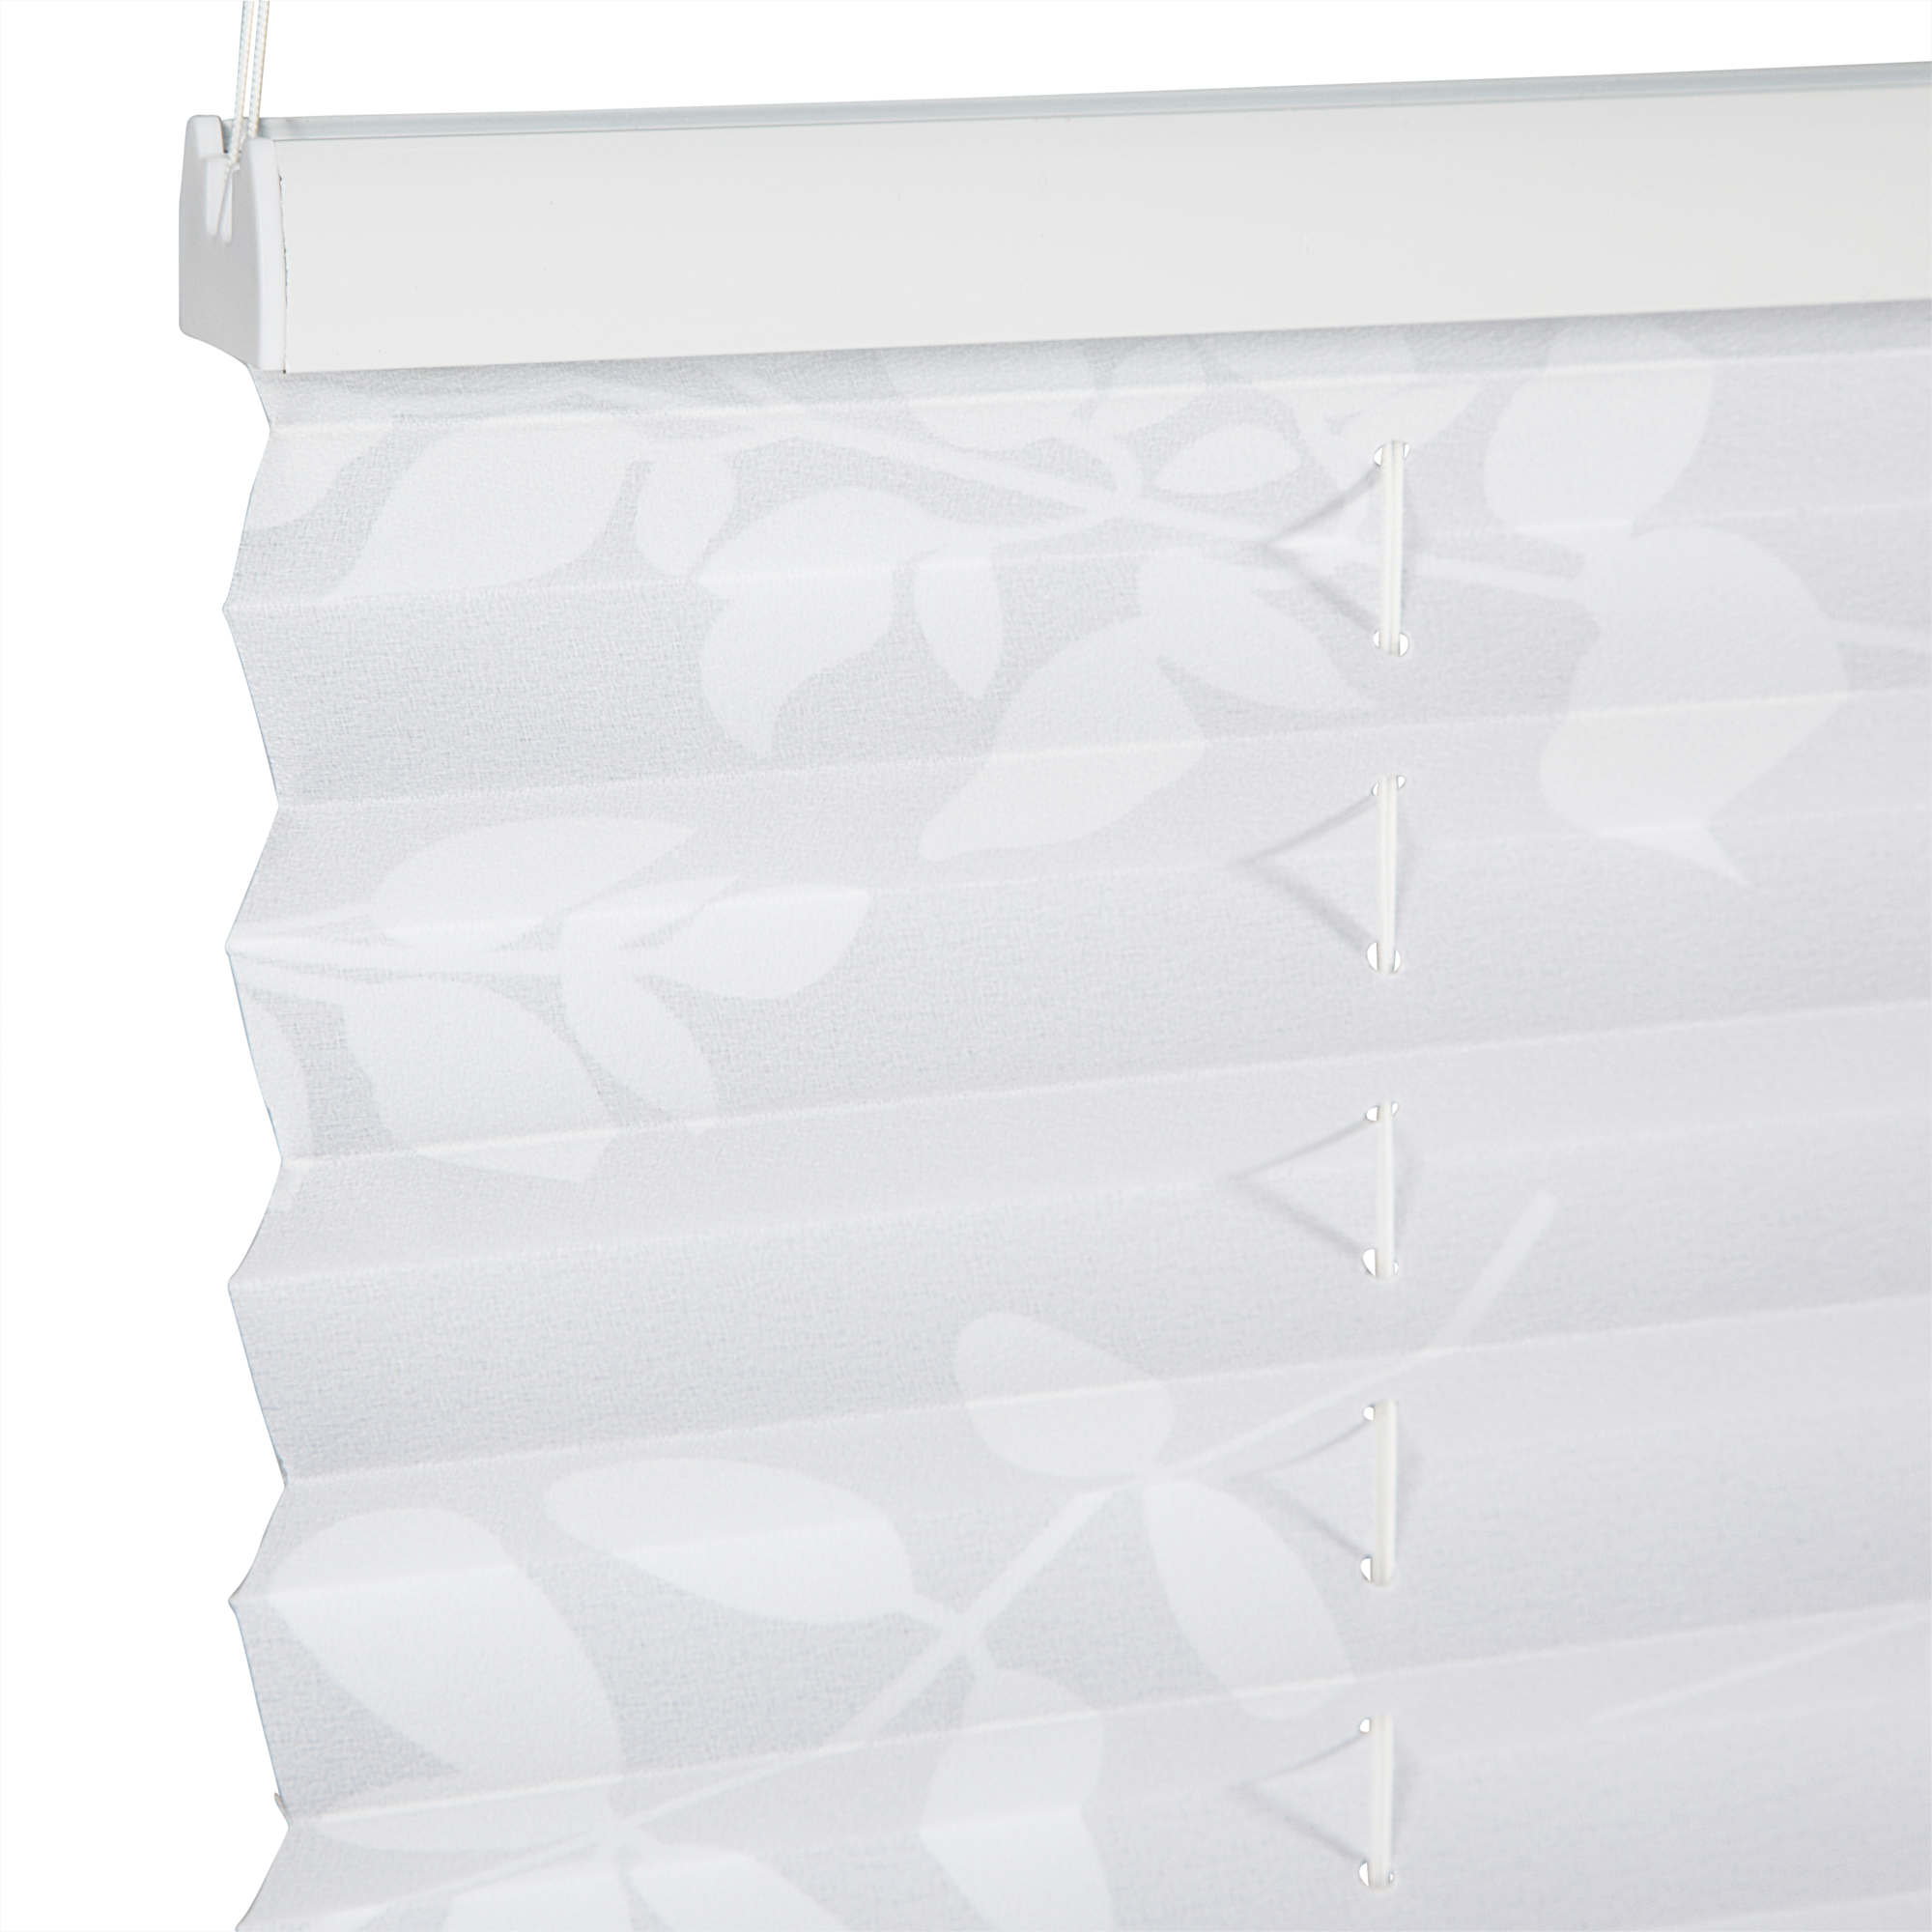 Tageslichtplissee 'Blüten' weiß 60 x 130 cm + product picture